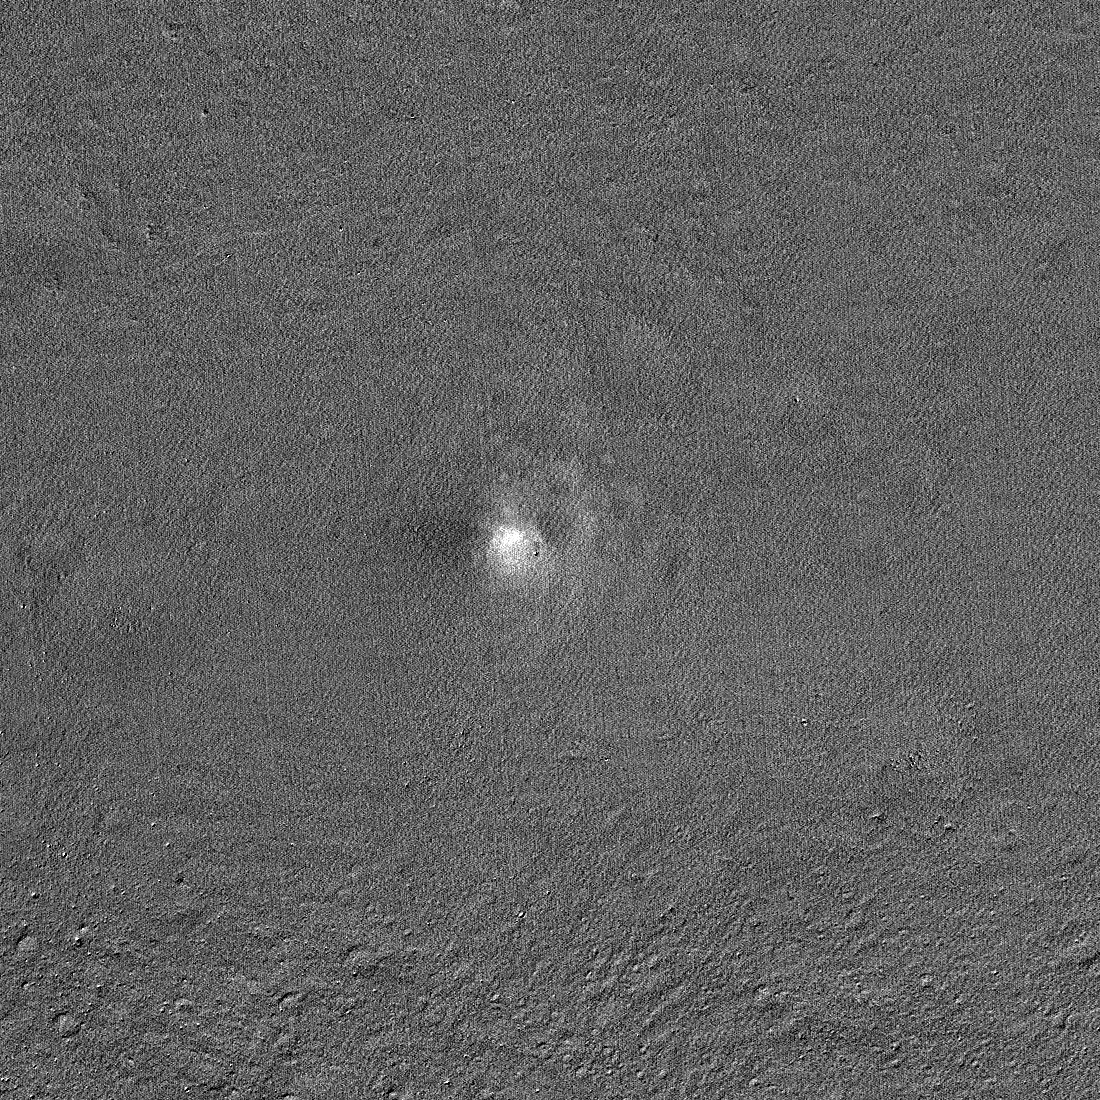 El orbitador de la NASA espía el problemático módulo de aterrizaje lunar SLIM de Japón en la superficie lunar (foto)